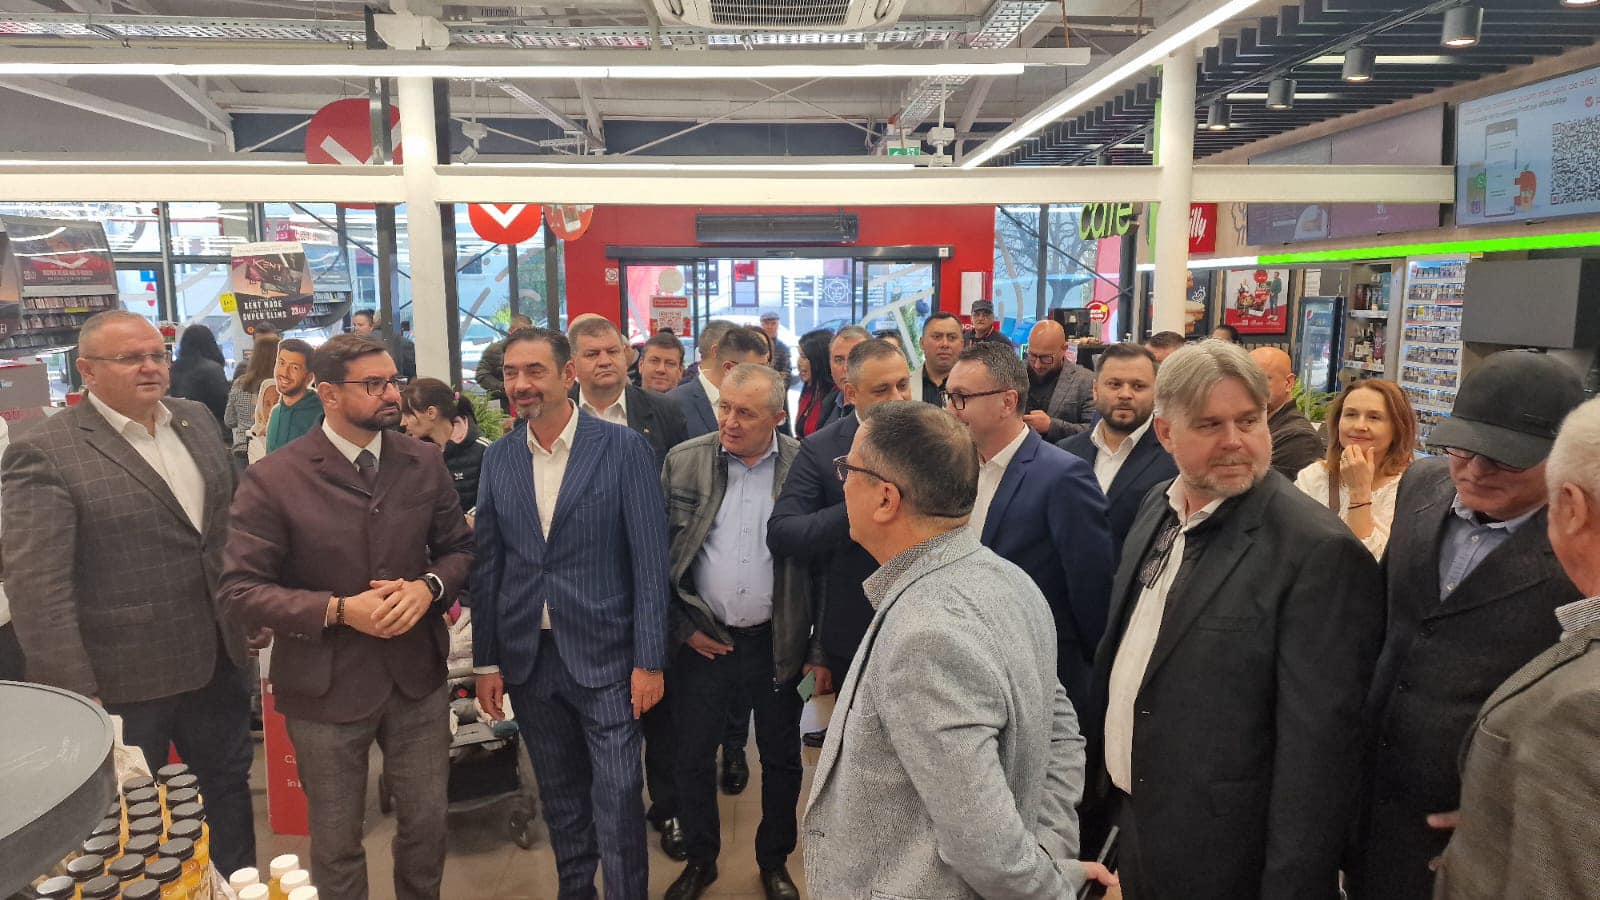 De Ziua Olteniei, deputatul Adrian Chesnoiu şi primarul Emil Moţ, susţin comercializarea produselor româneşti  făcute în gospodăria ţărănească